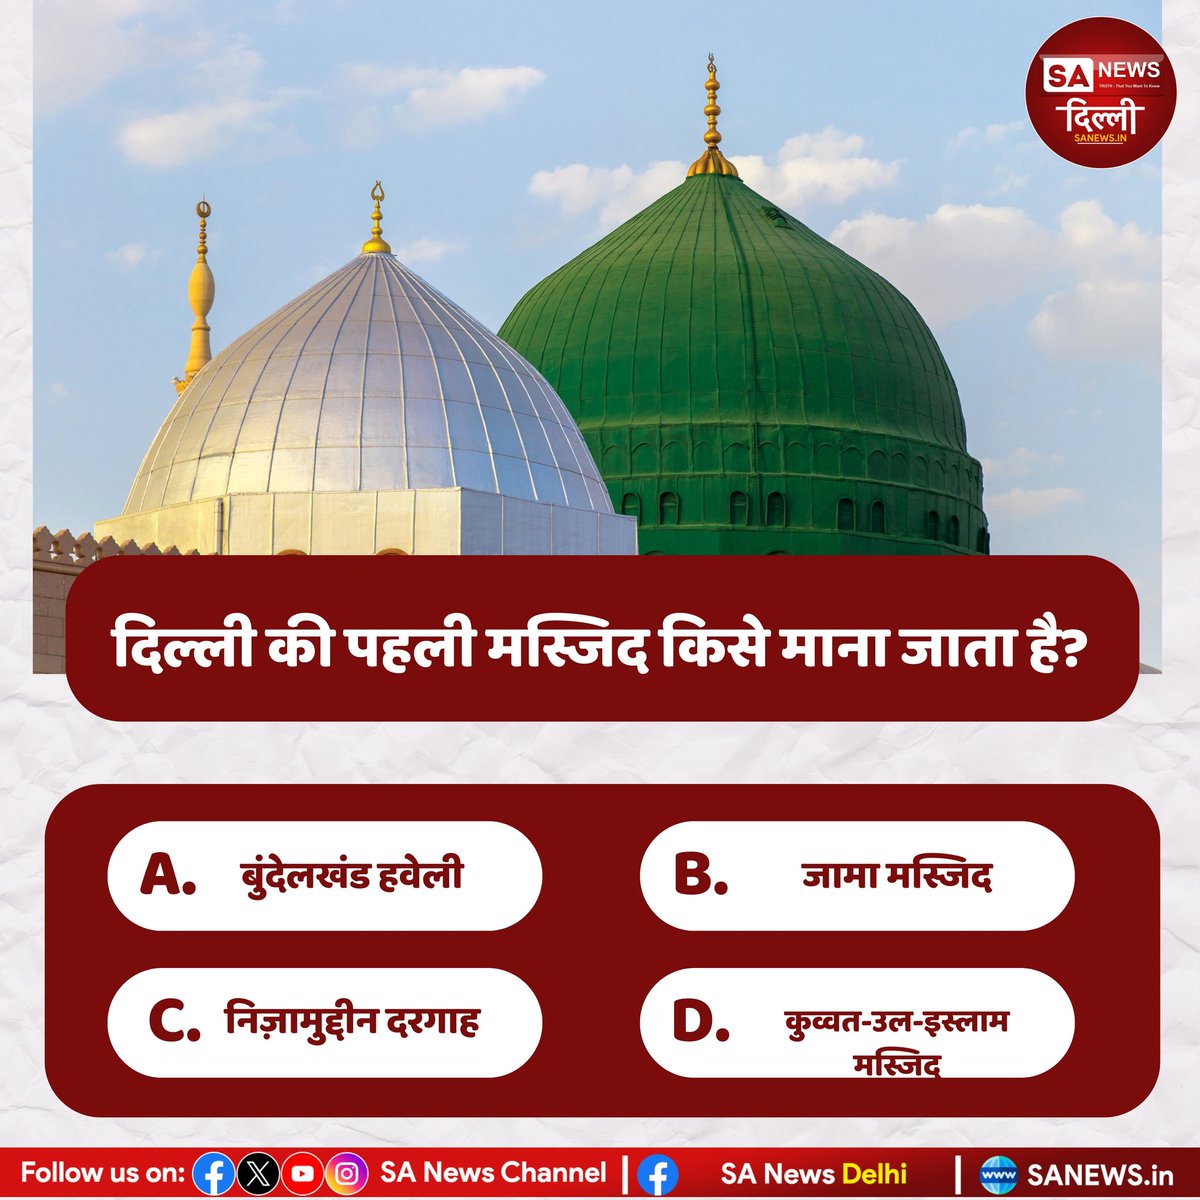 दिल्ली की पहली मस्जिद किसे माना जाता है?
A. बुंदेलखंड हवेली
B. जामा मस्जिद 
C. निजामुद्दीन दरगाह 
D. कुव्वत उल इस्लाम मस्जिद

#sanewsdelhi